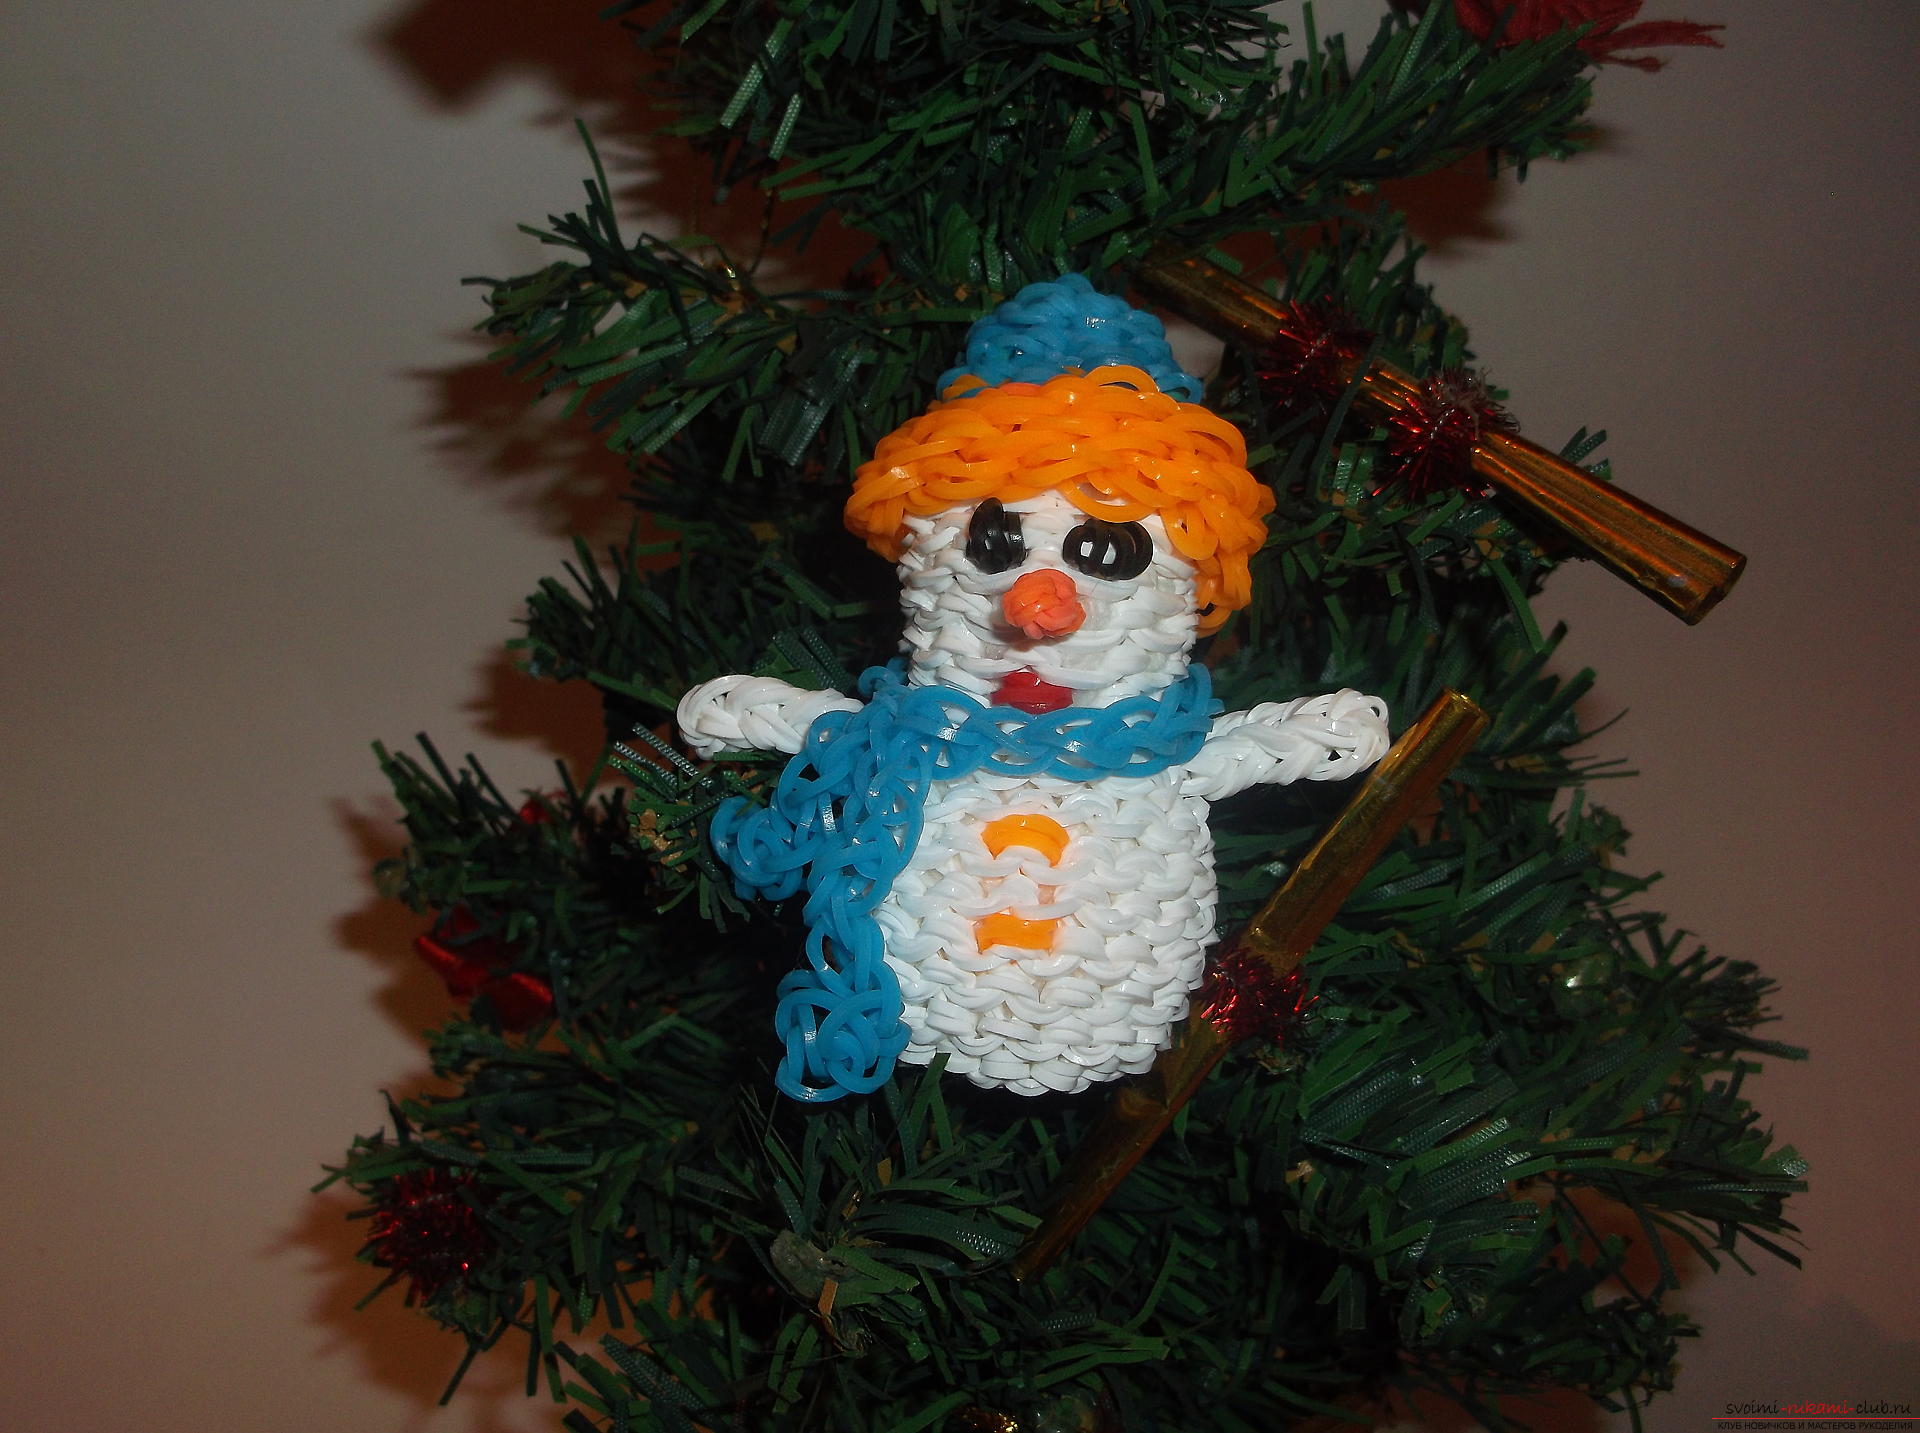 Фото к уроку по плетению из резиночек снеговичка к новогодним праздникам. Фото №22